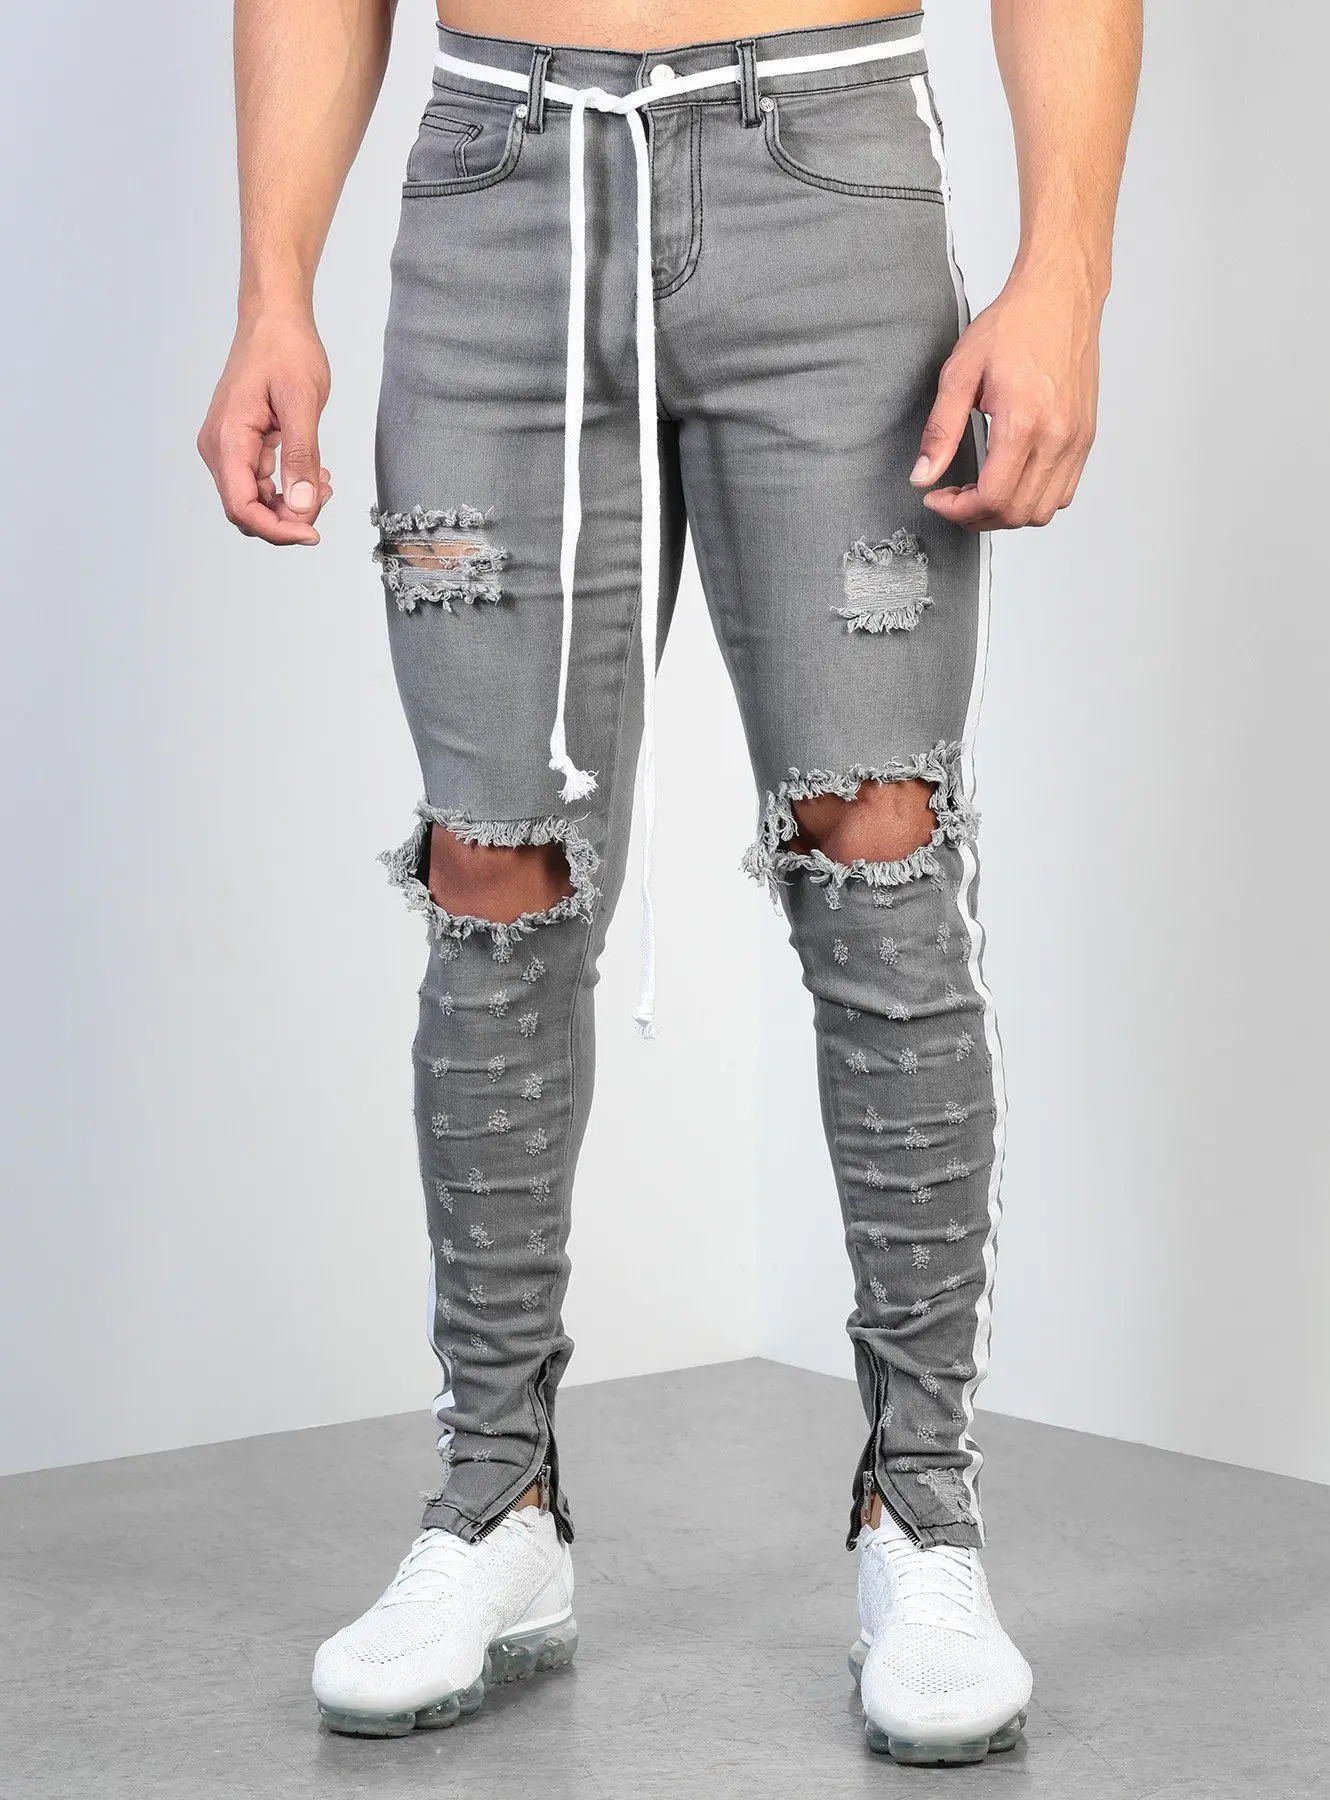 Мужские обтягивающие джинсы с боковыми полосками, рваные джинсы с дырками на коленях, облегающие джинсовые брюки-карандаш, потертые мужские серые брюки, модный дизайн